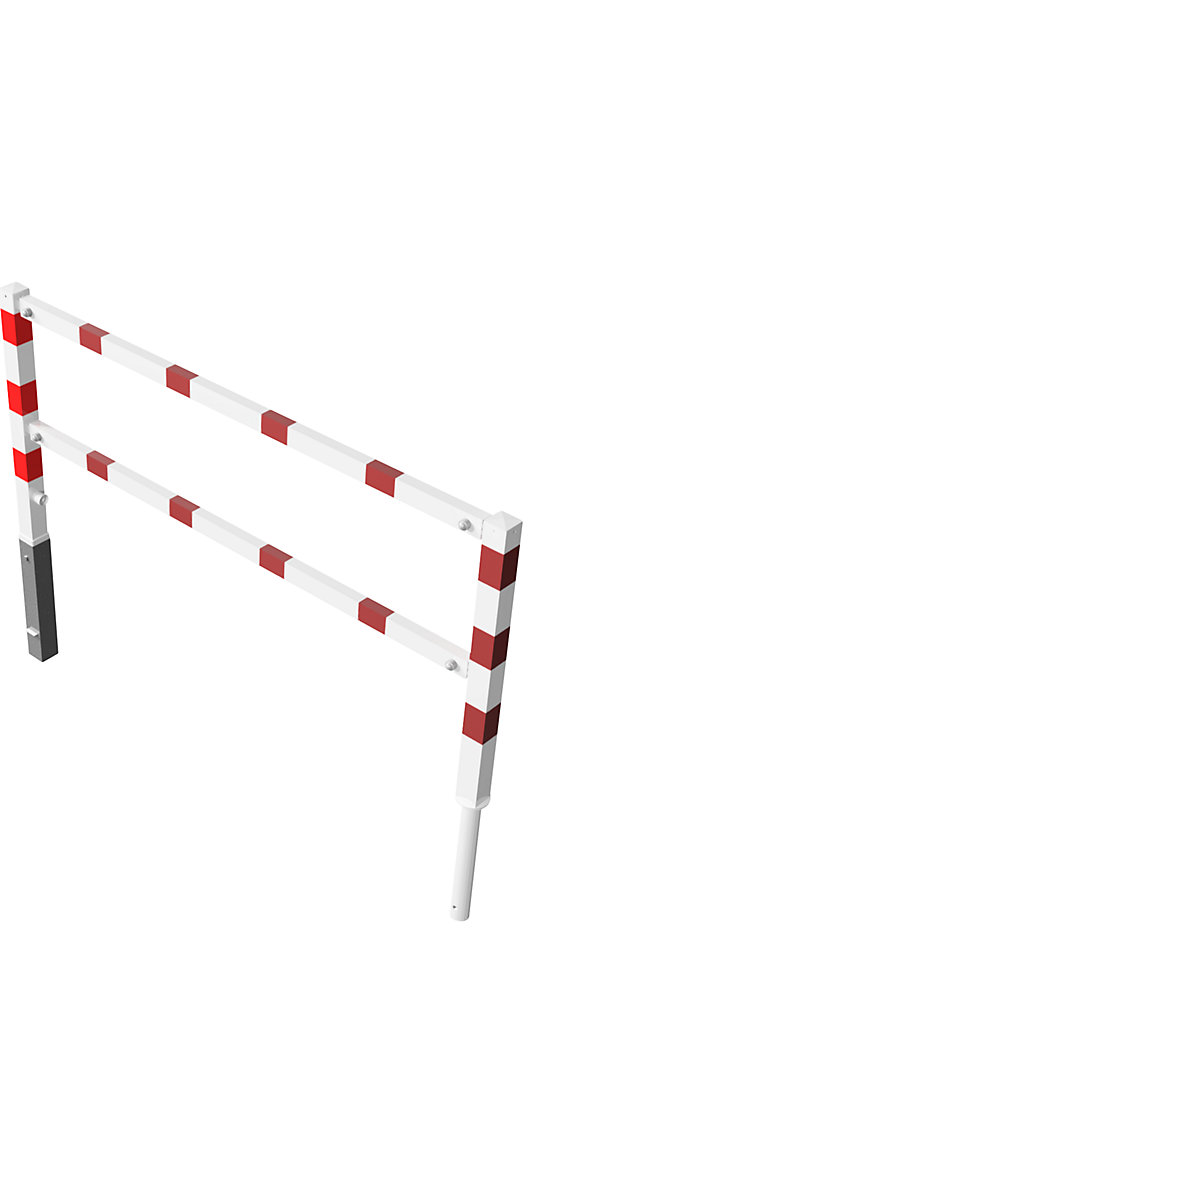 Barrière pivotante, avec barre supérieure et au niveau des genoux, blanc avec bandes réfléchissantes rouges, largeur 2000 mm-4